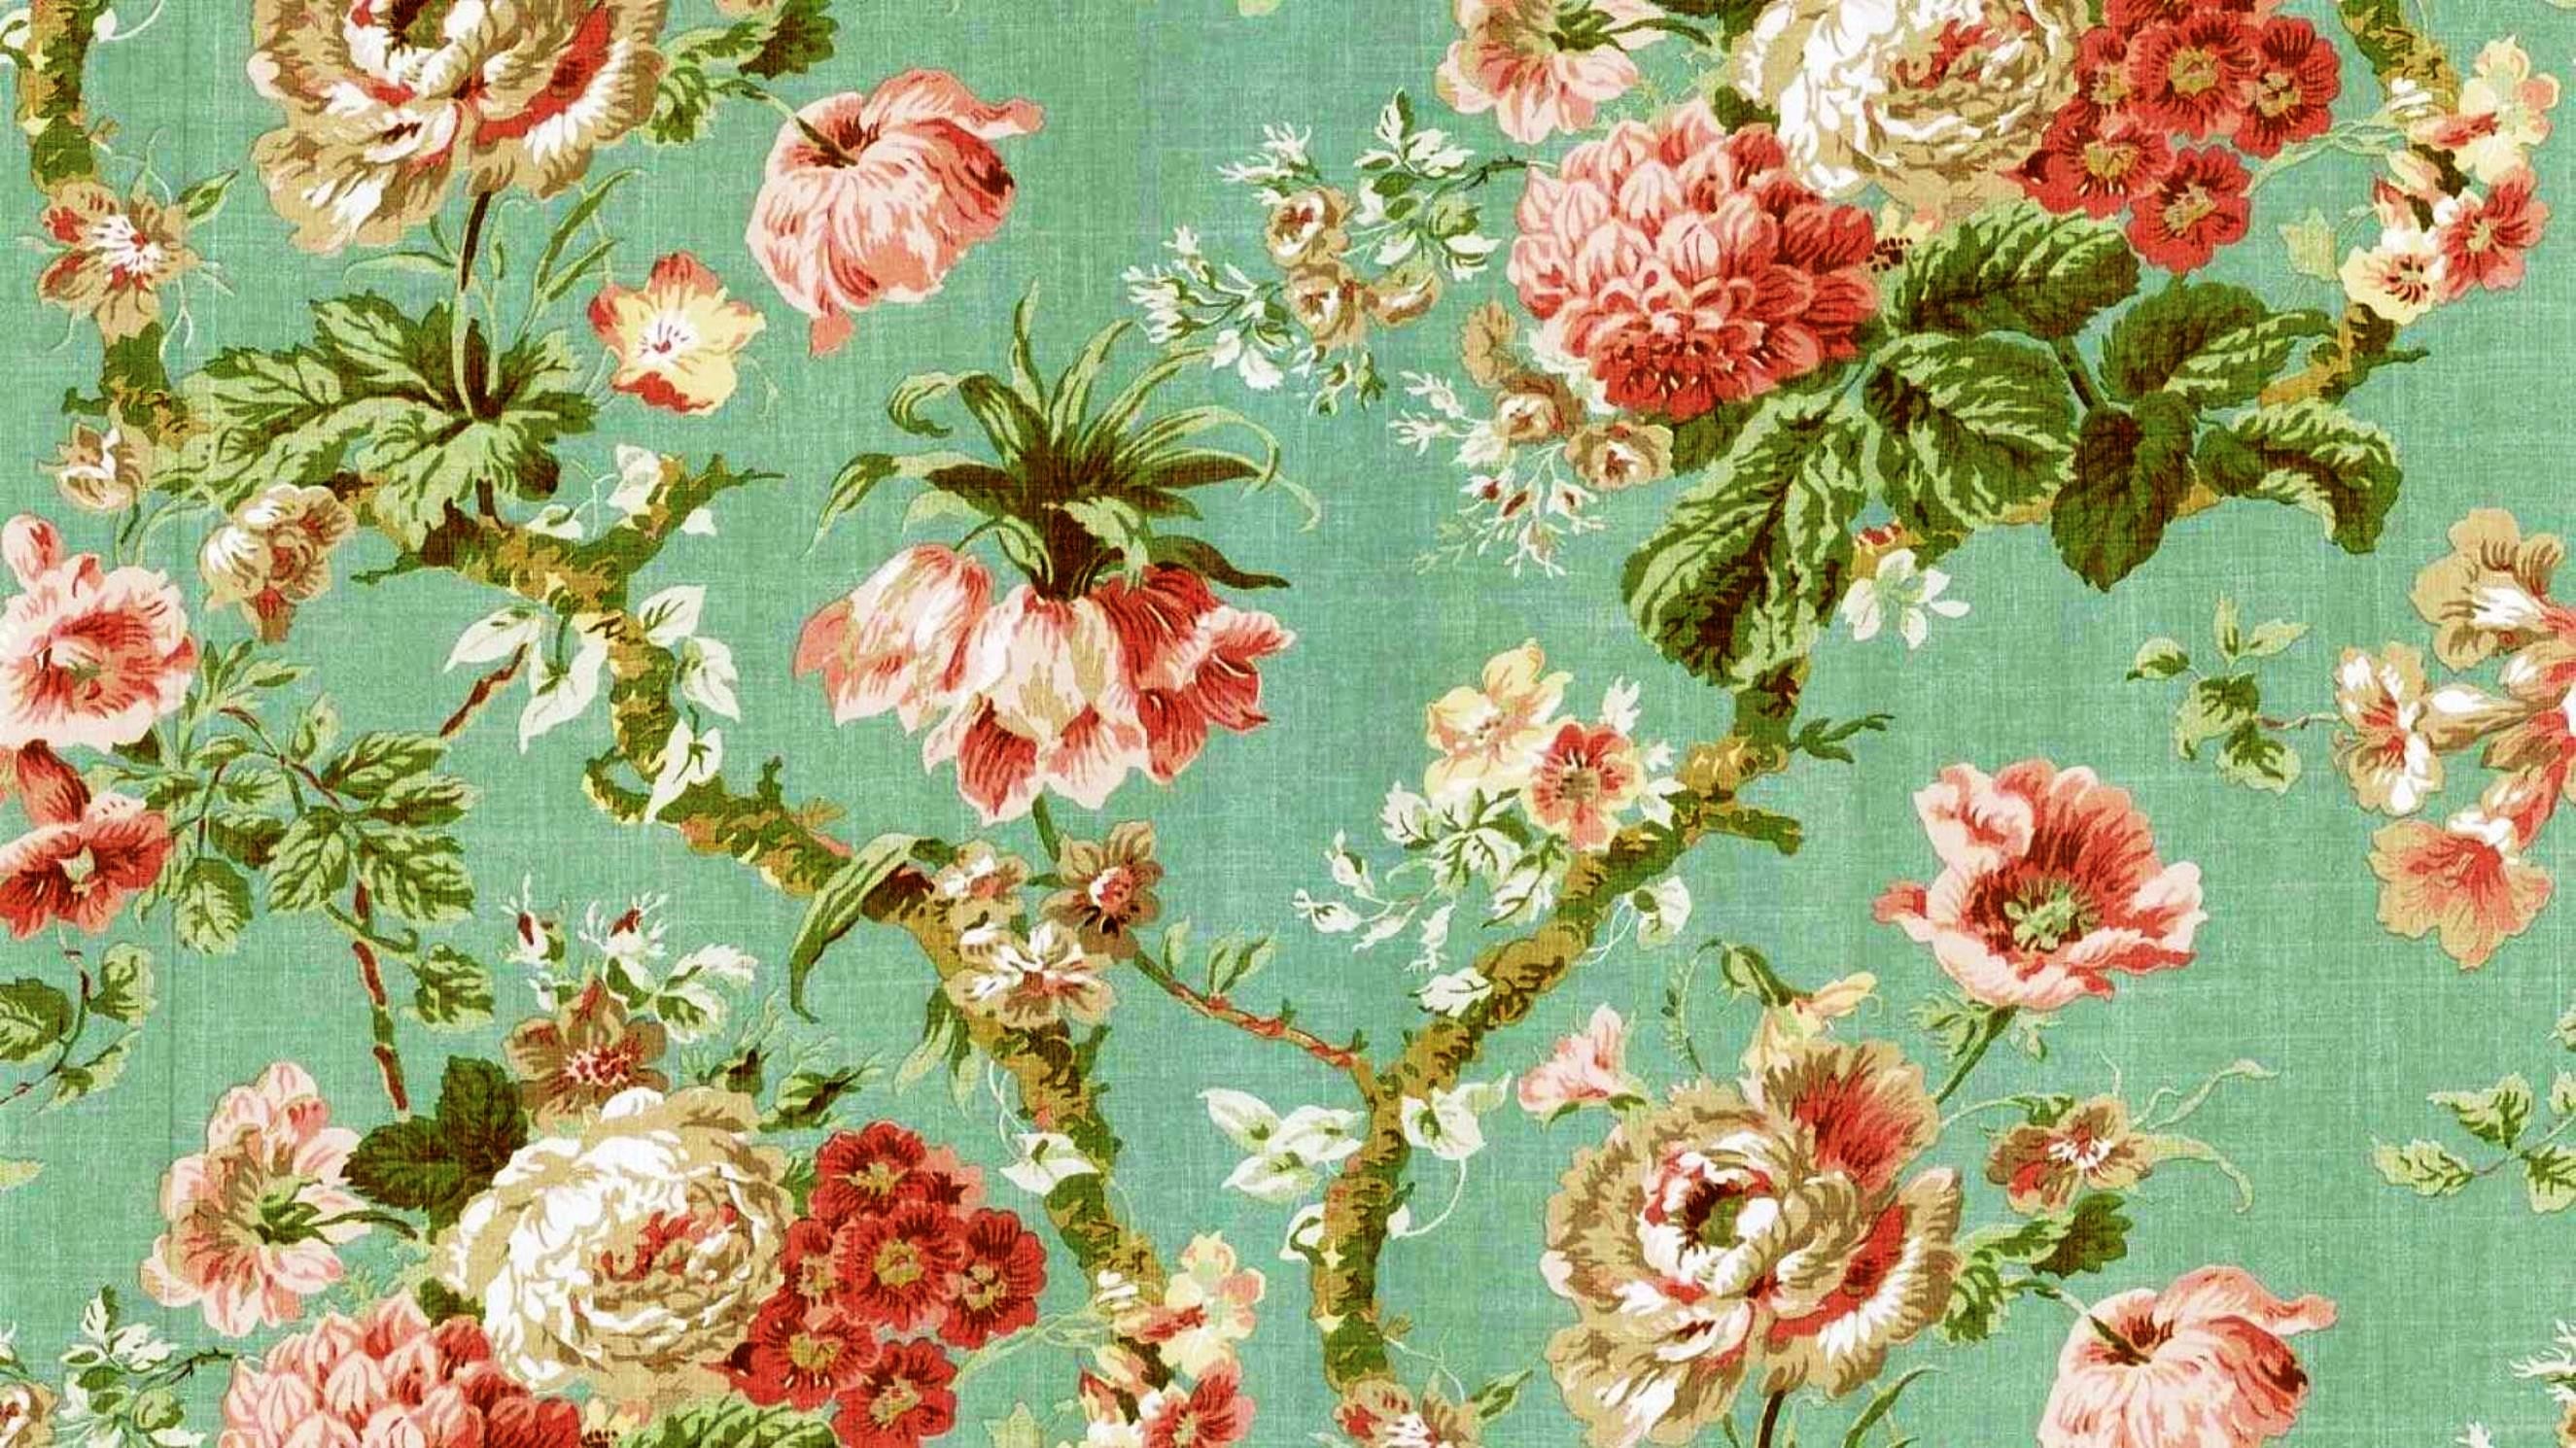 2650x1490 Desktop-wallpaper-vintage-floral.jpg (2650Ã1490) | vintage floral patterns  | Pinterest | Floral wallpapers, Wallpaper and Bedrooms